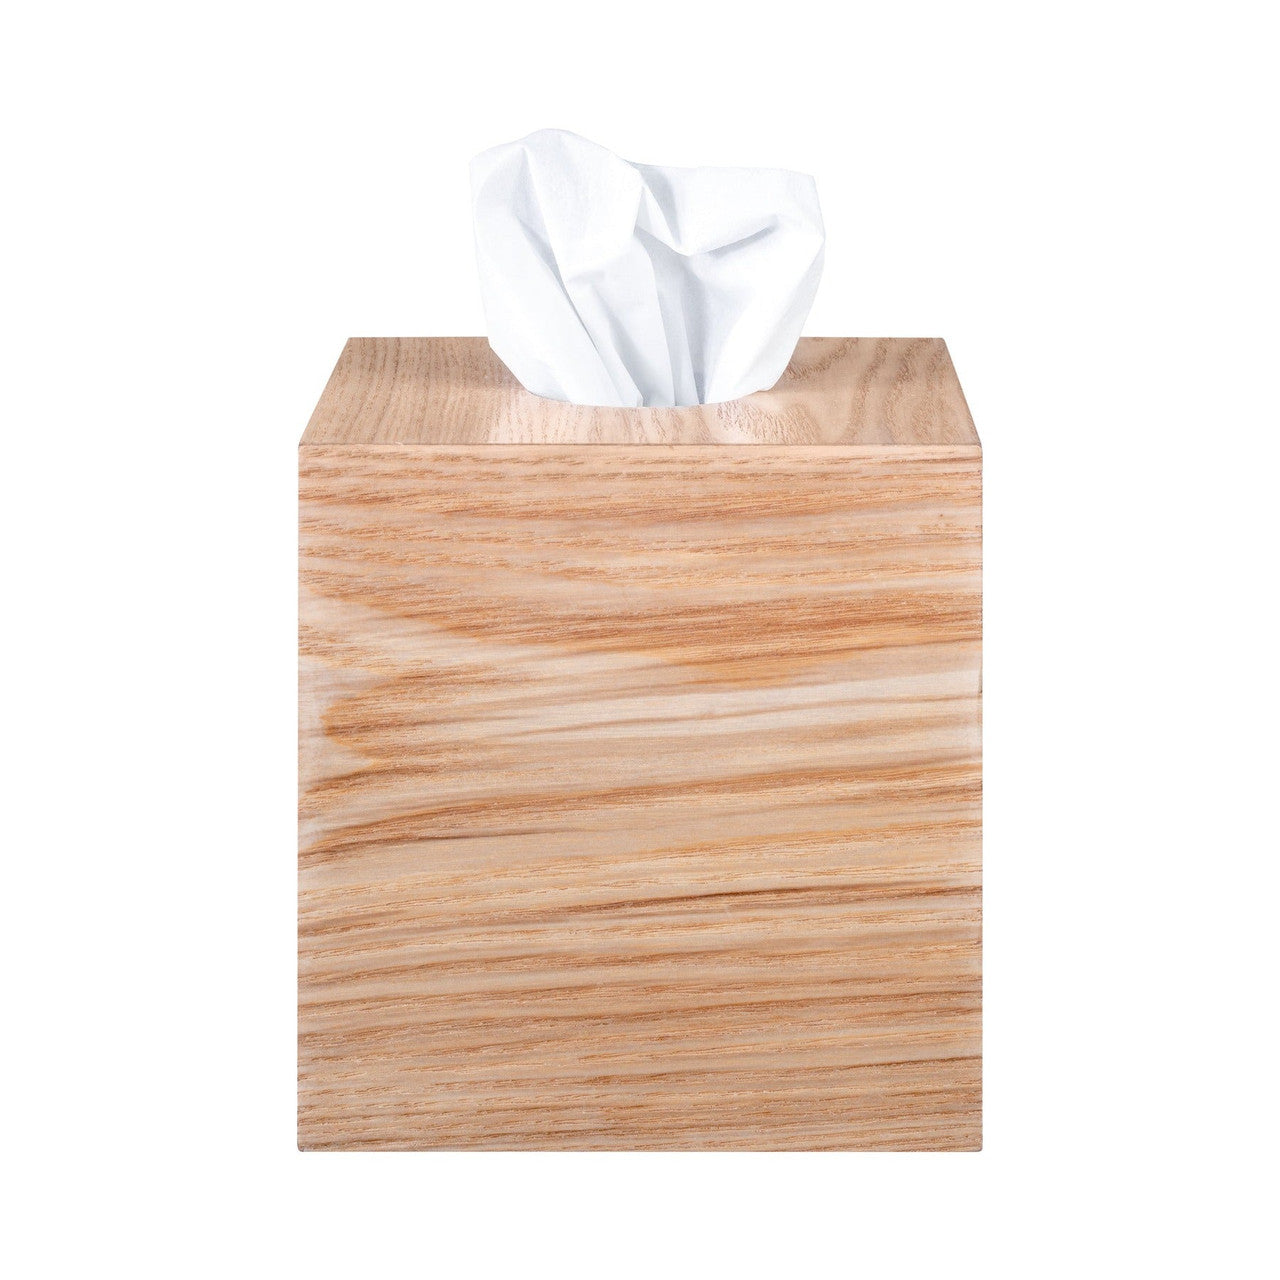 WILO Wood Tissue Box Cover